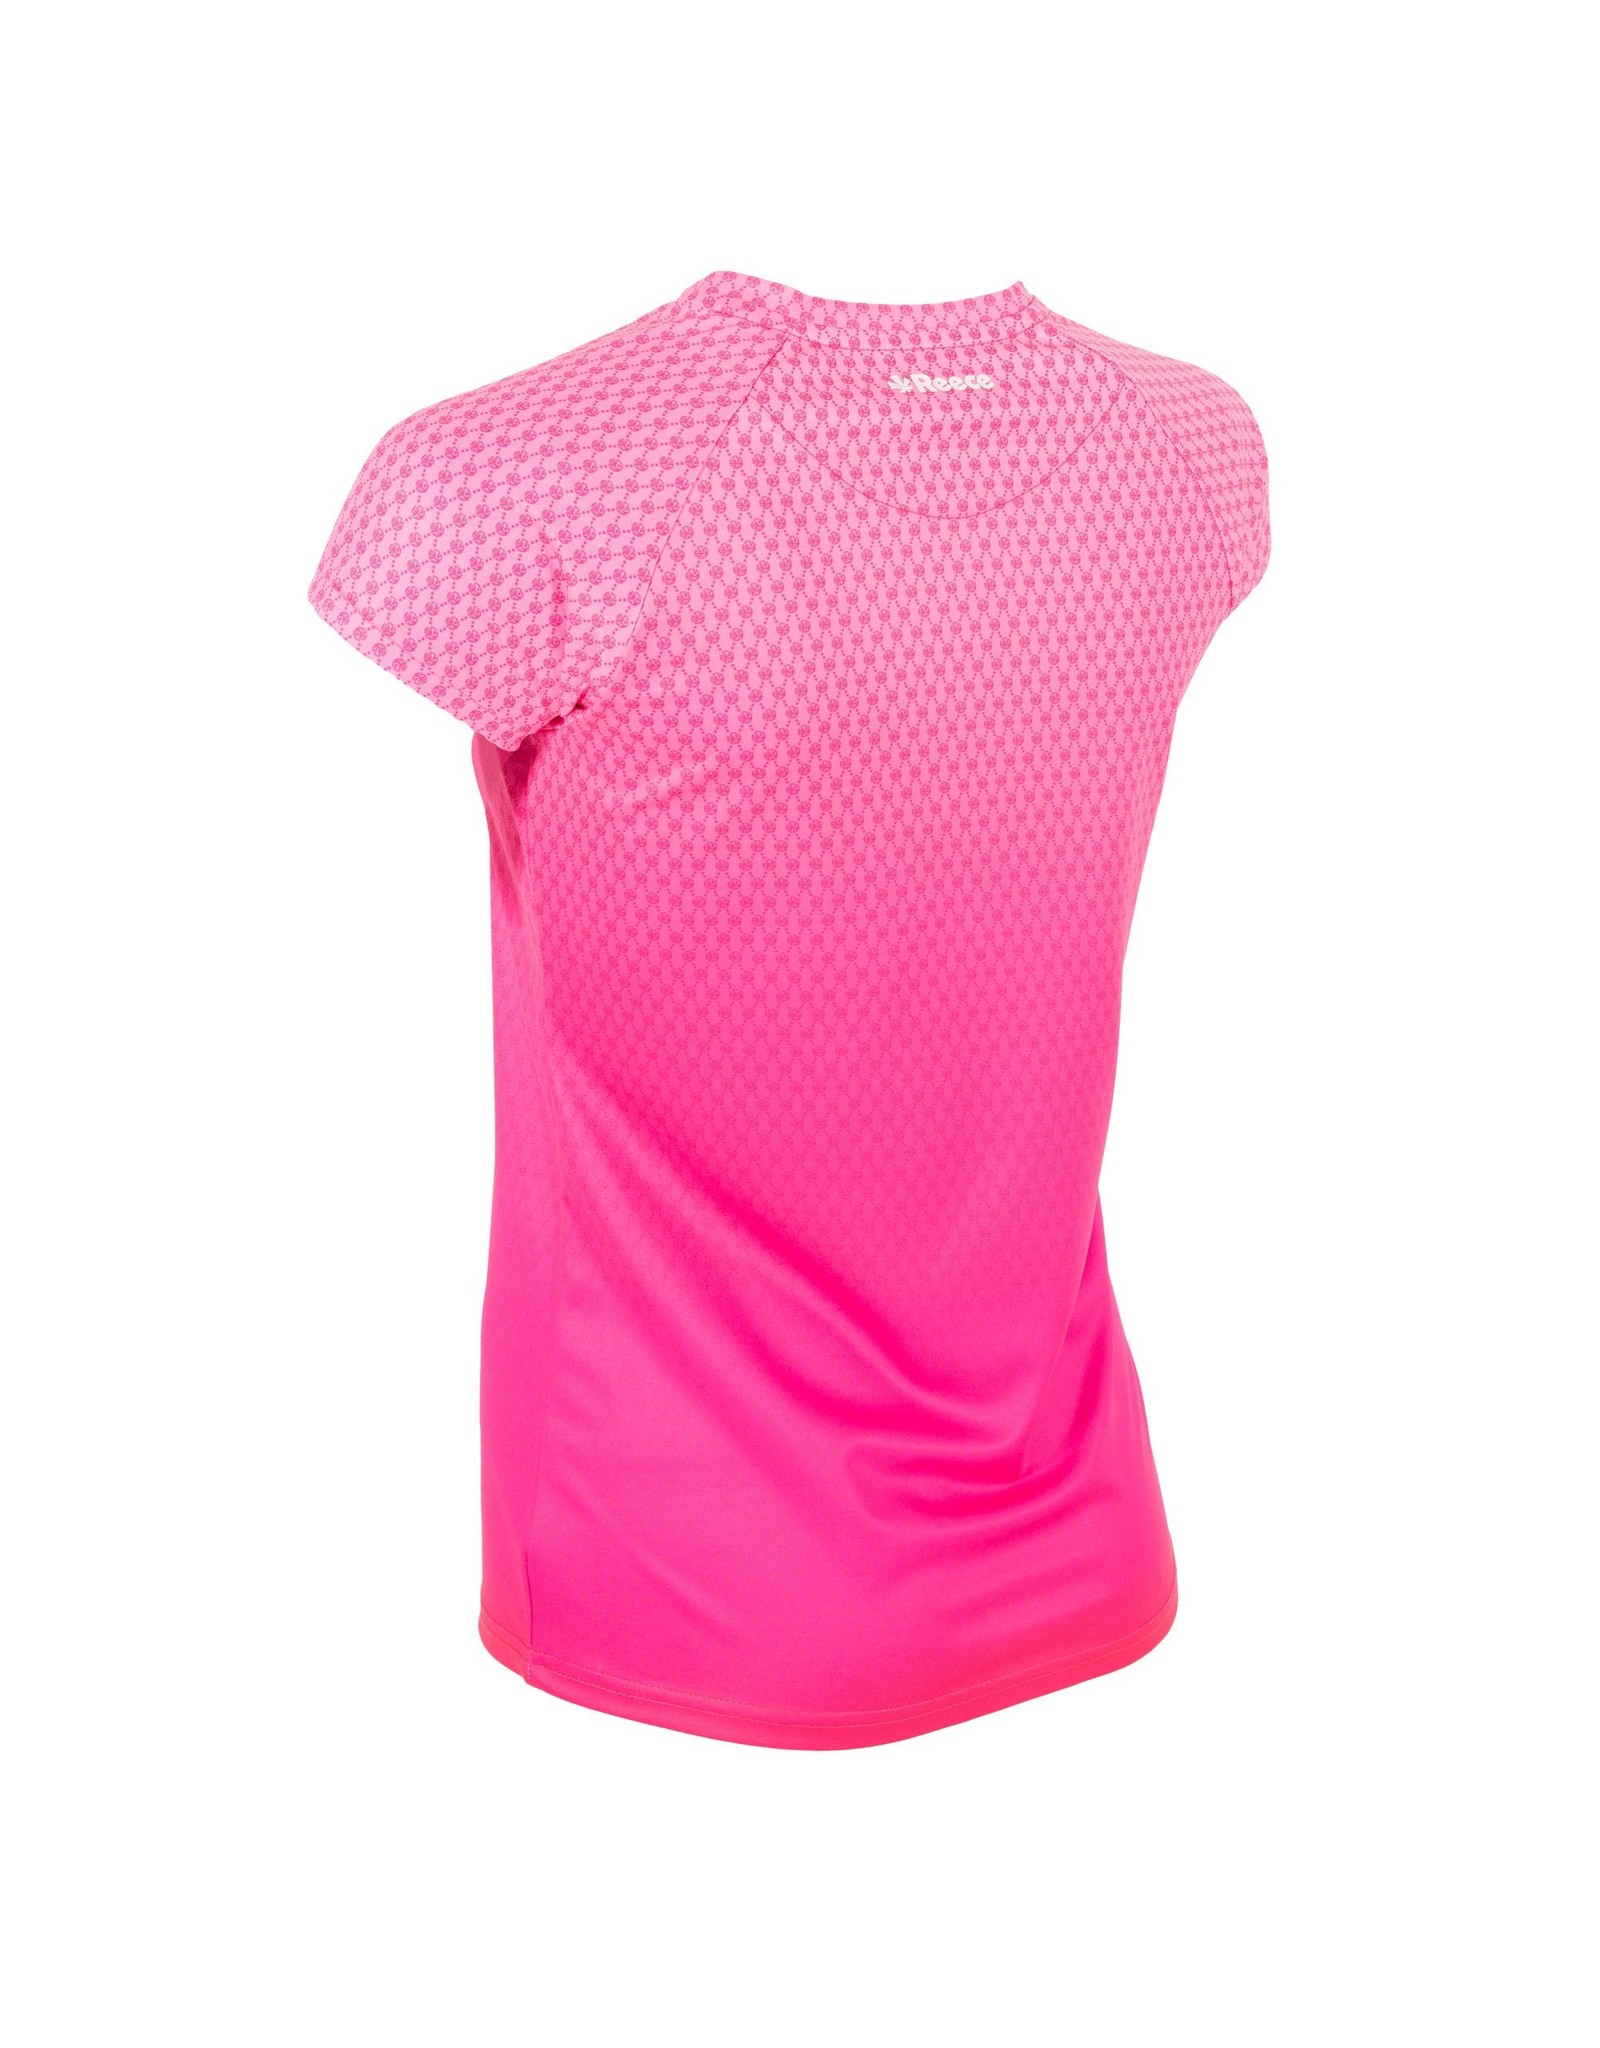 Reece Australia Ellis Shirt Limited Ladies-Roze